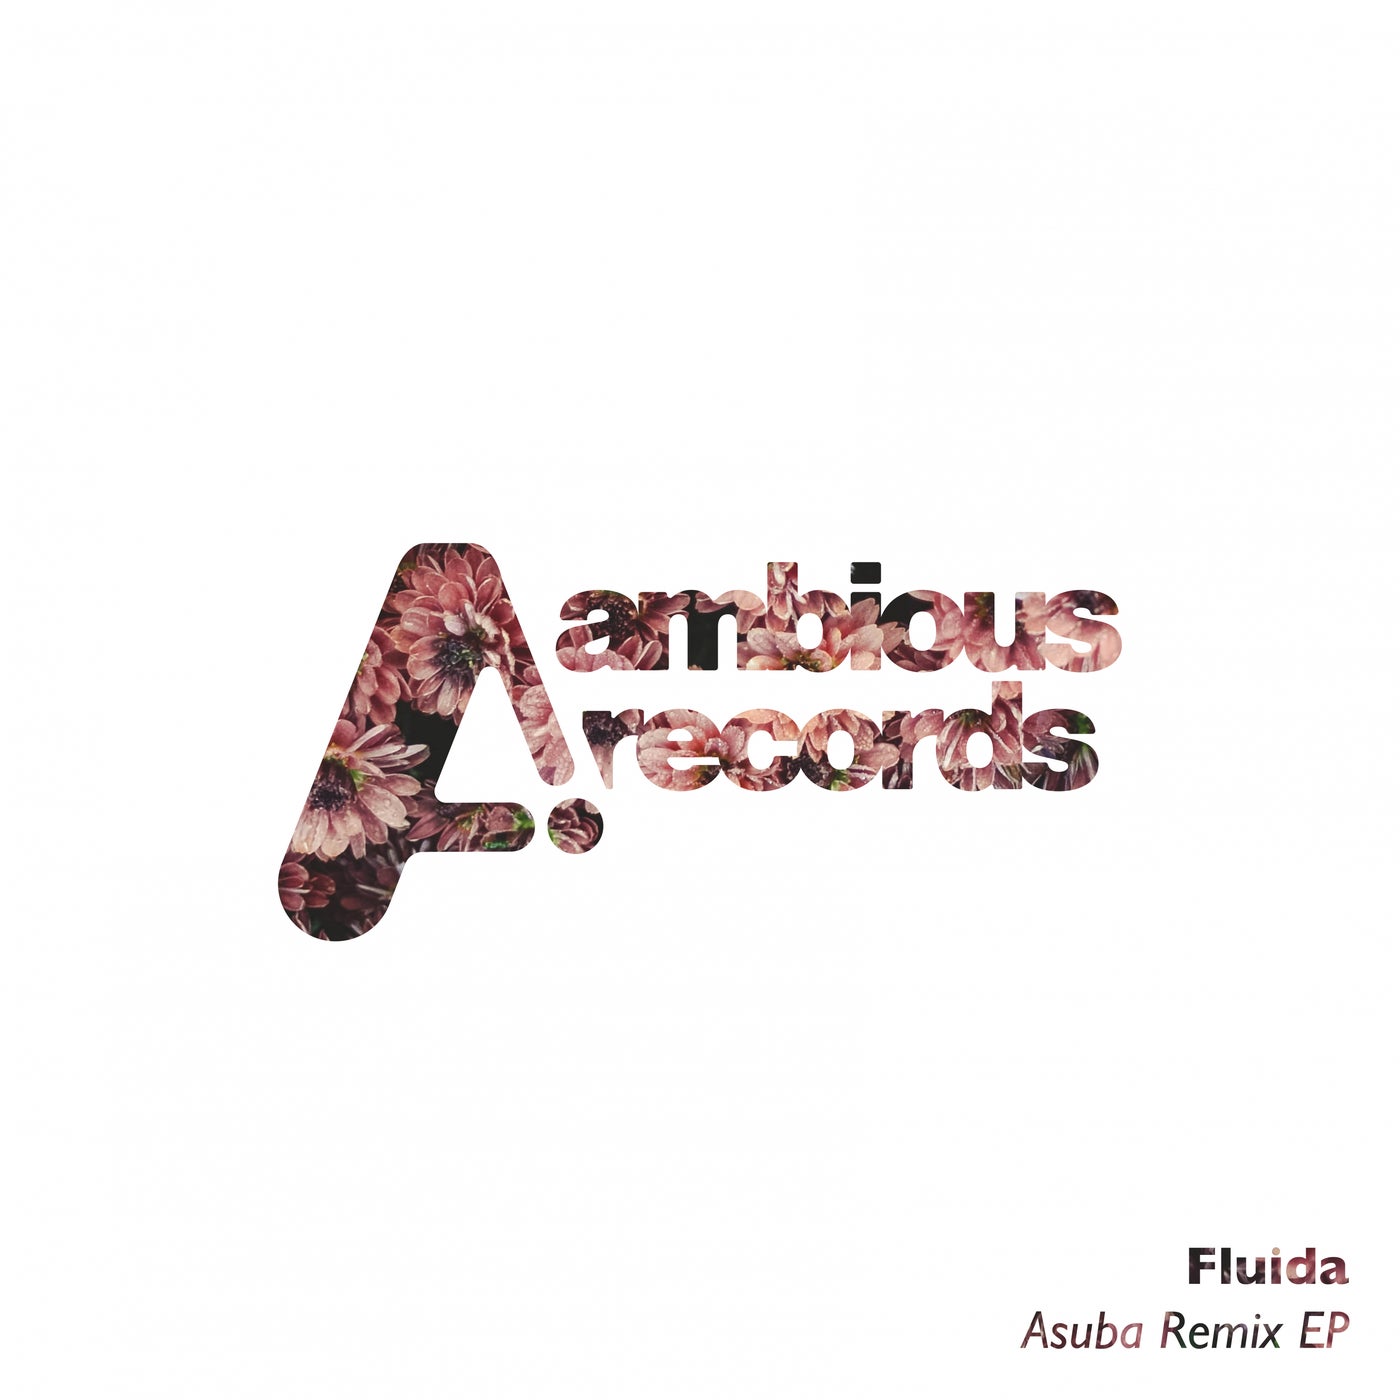 Fluida – Asuba Remix EP [AMB045]